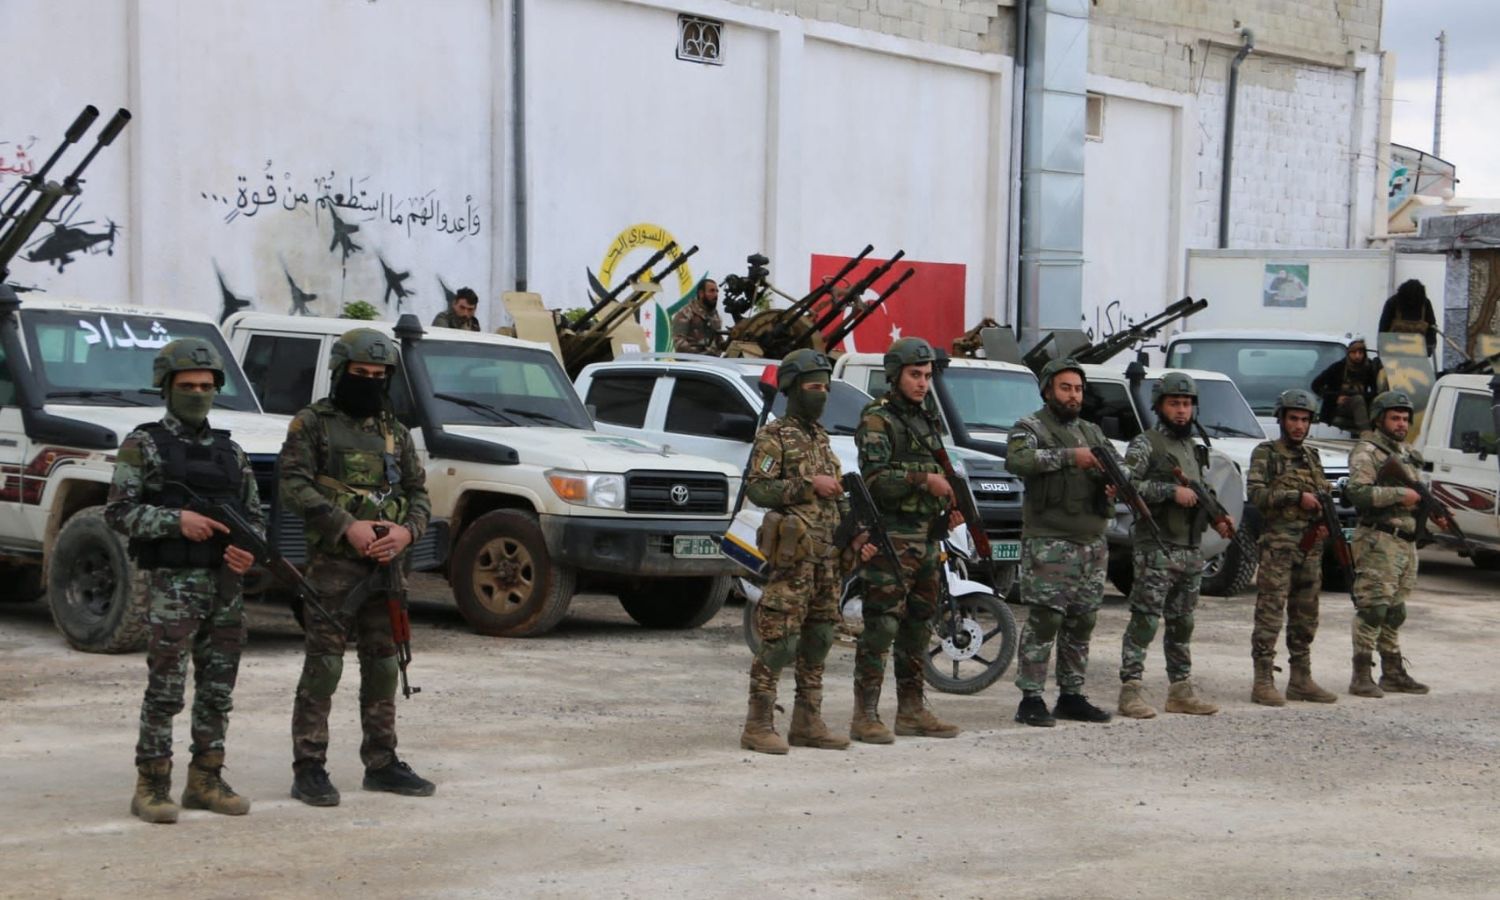 مقاتلون في "الجيش الوطني السوري" داخل أحد المقار بريف حلب الشمالي- 2 من نيسان 2023 (وزارة الدفاع)